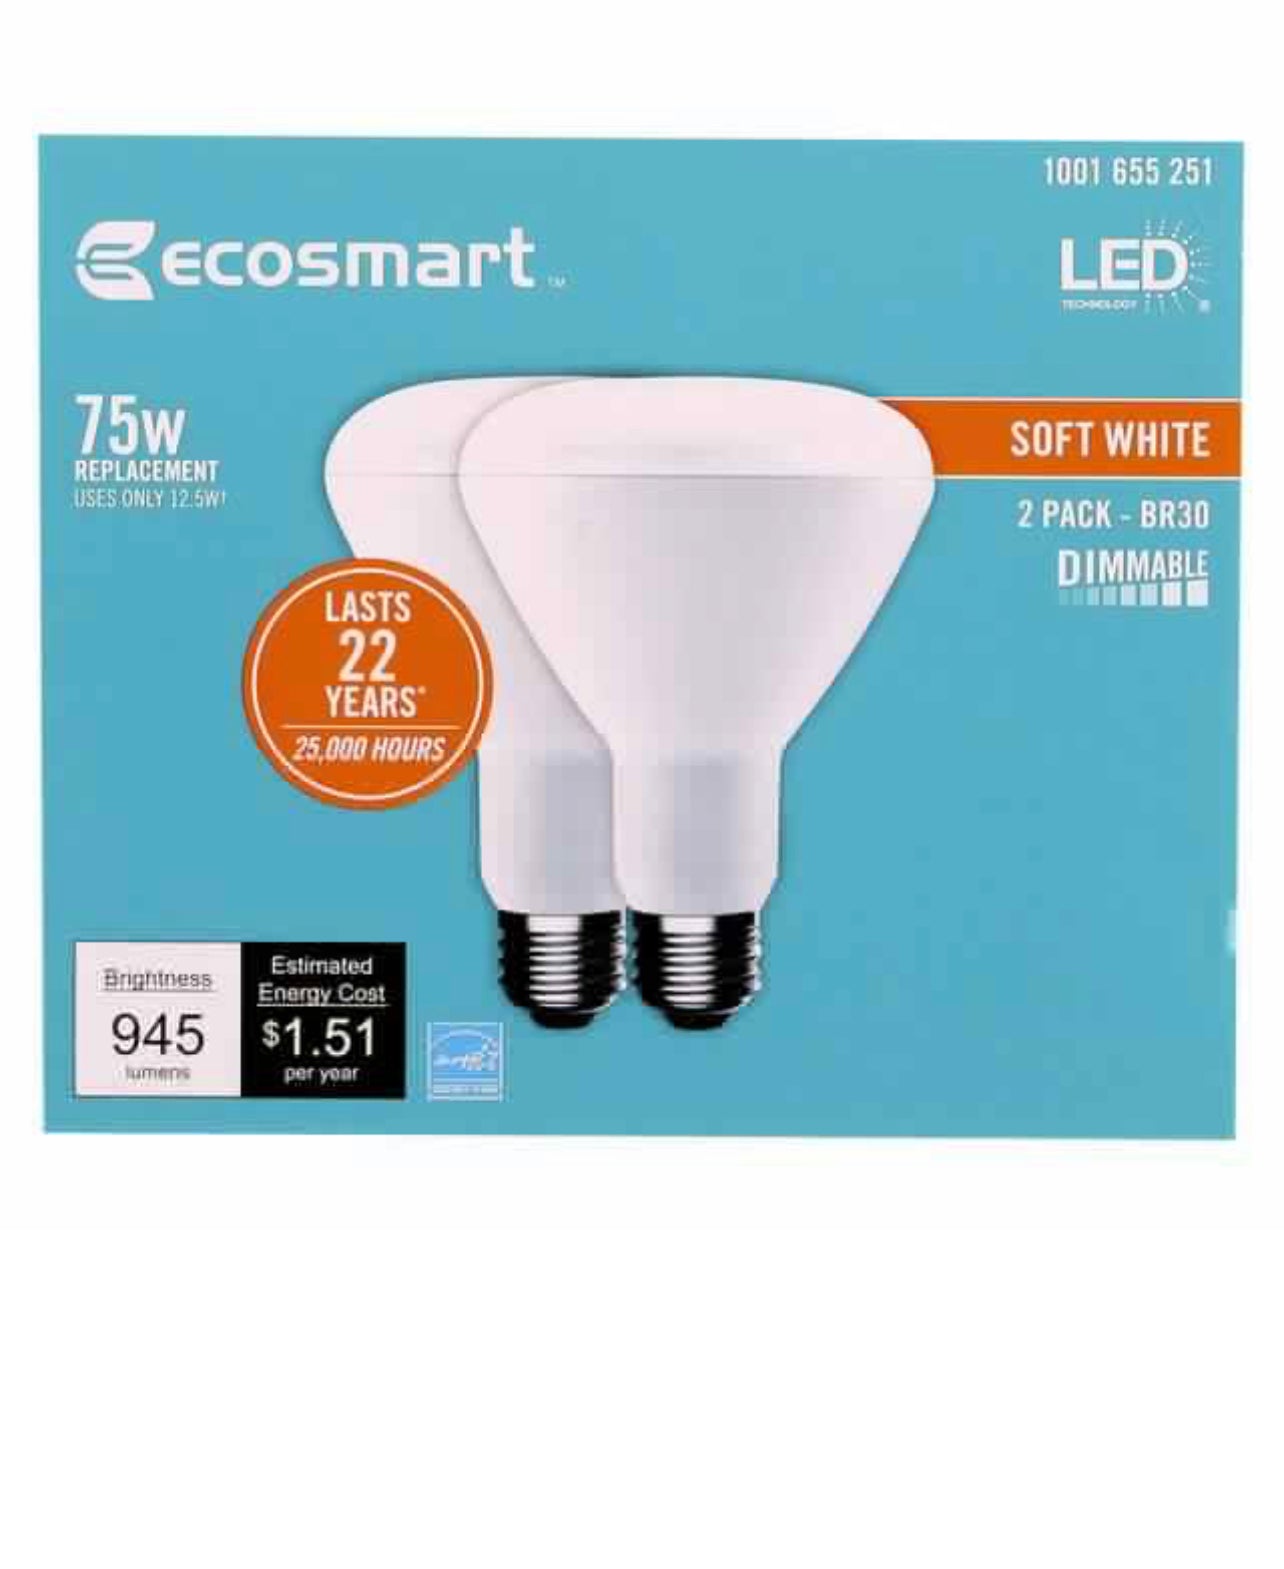 Ecosmart 75 Watt Equivalent BR30 Dimmable Energy Star LED Light Bulb Soft White (2-Pack) Damaged Box